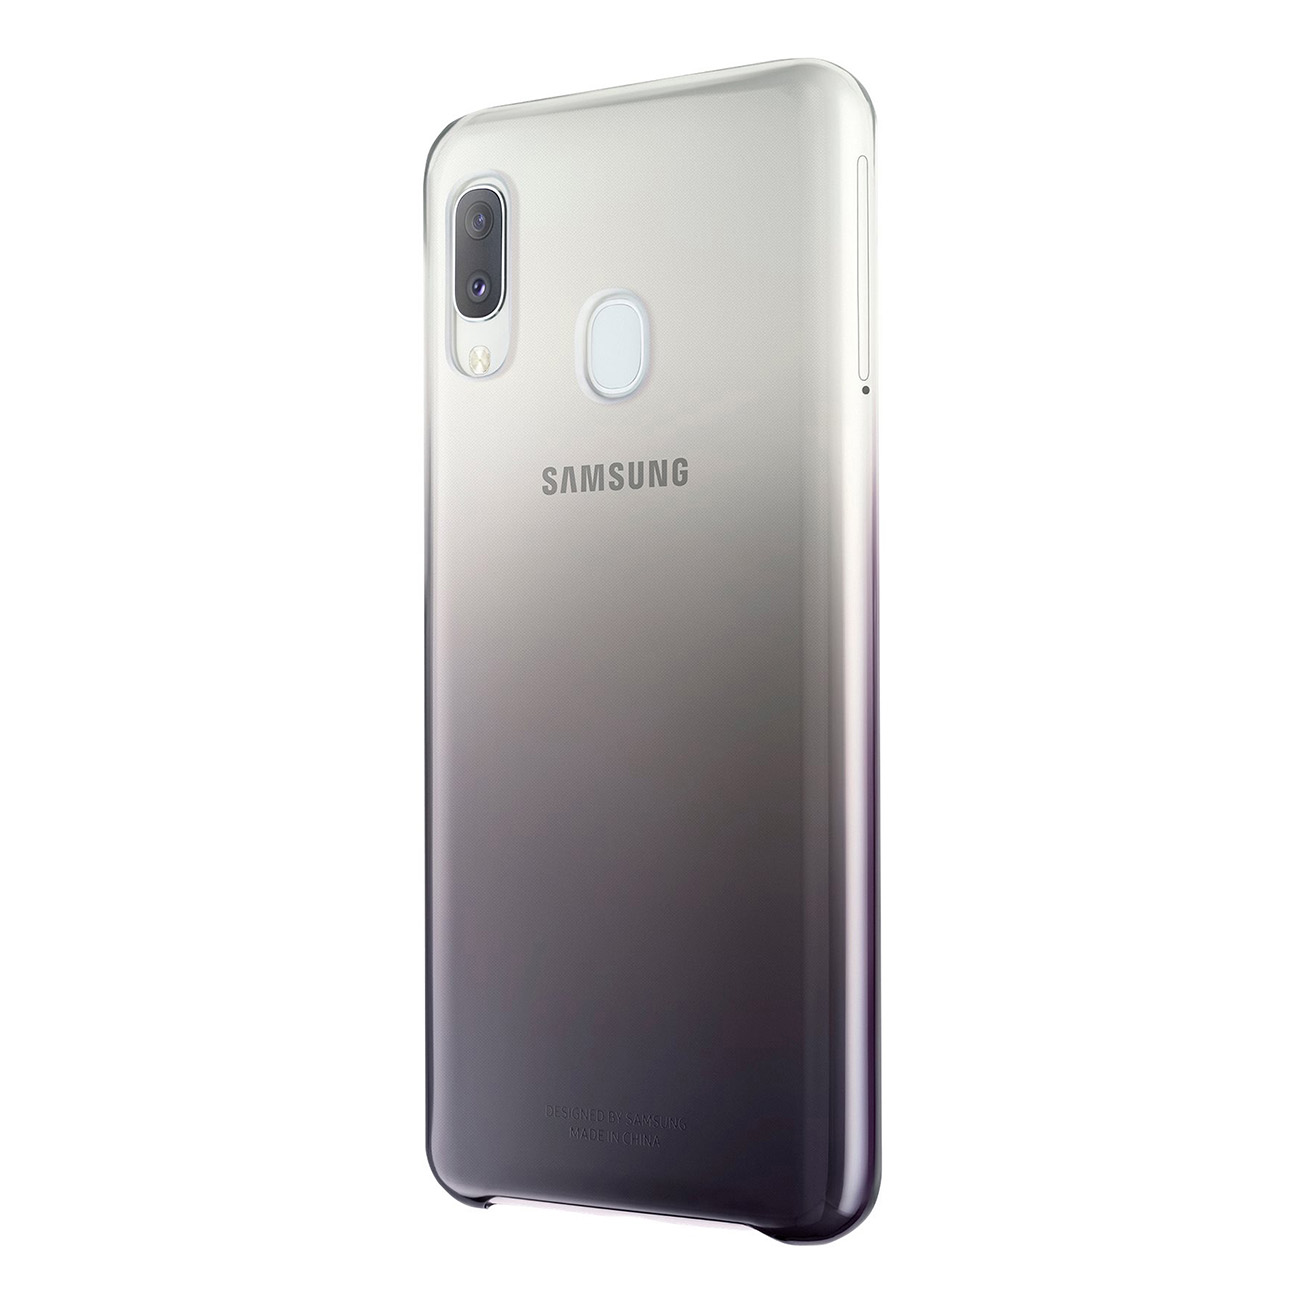 SAMSUNG EF-AA202, Full Cover, Samsung, schwarz A20e (SM-A202F), Galaxy